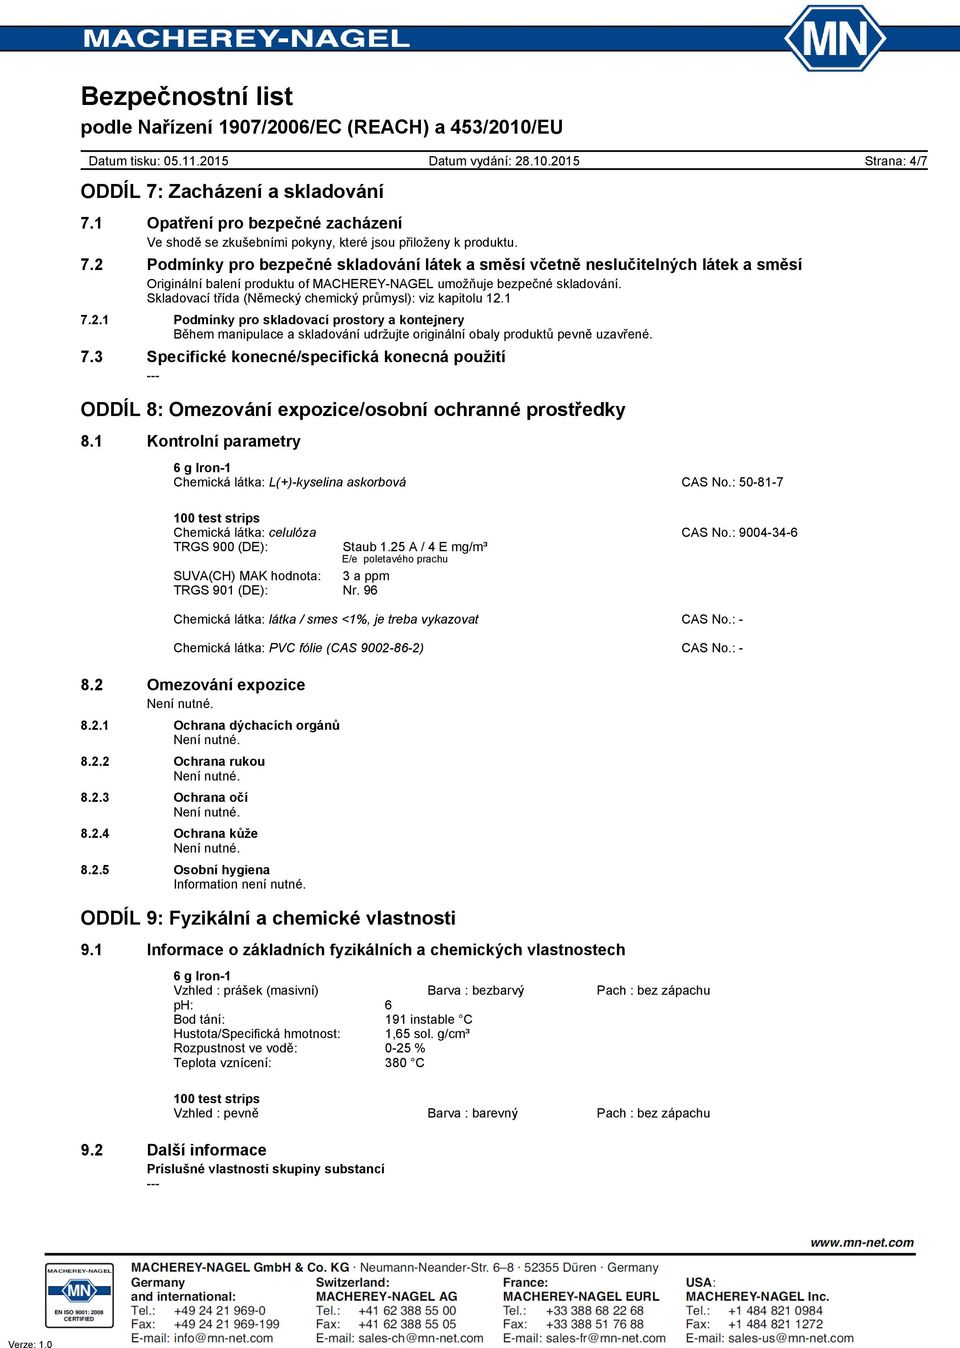 1 Kontrolní parametry Chemická látka: L(+)kyselina askorbová CAS No.: 50817 Chemická látka: celulóza CAS No.: 9004346 TRGS 900 (DE): Staub 1.